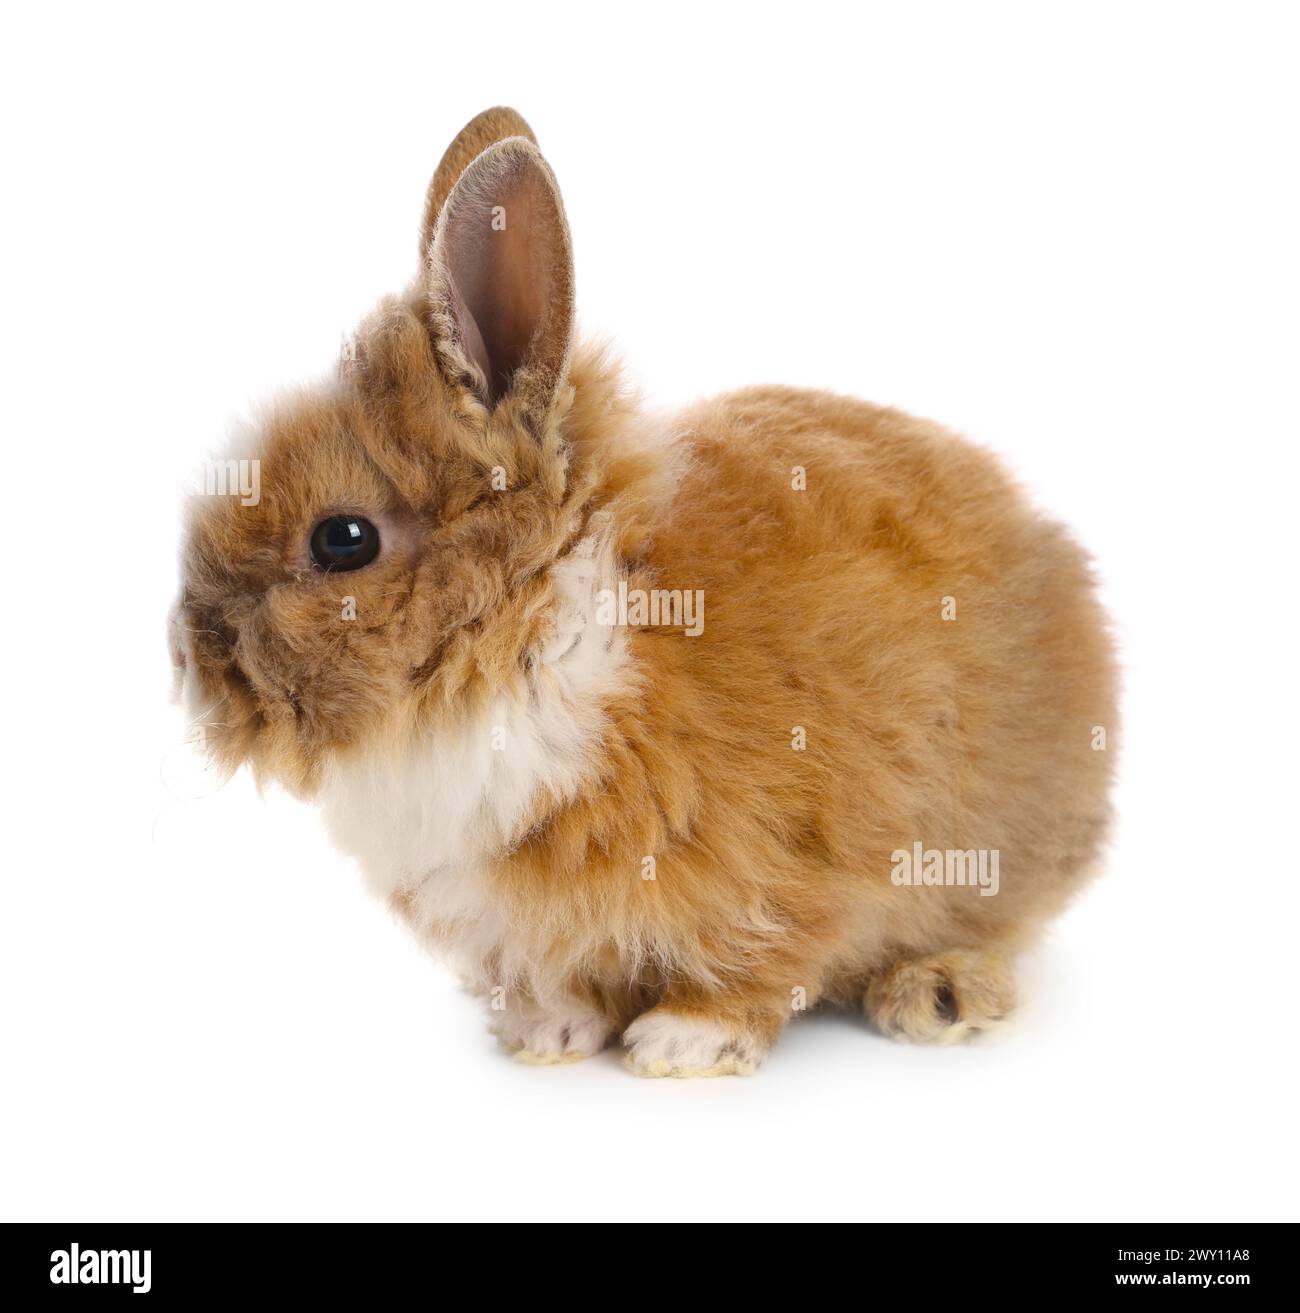 Joli petit lapin sur fond blanc. Adorable animal de compagnie Banque D'Images